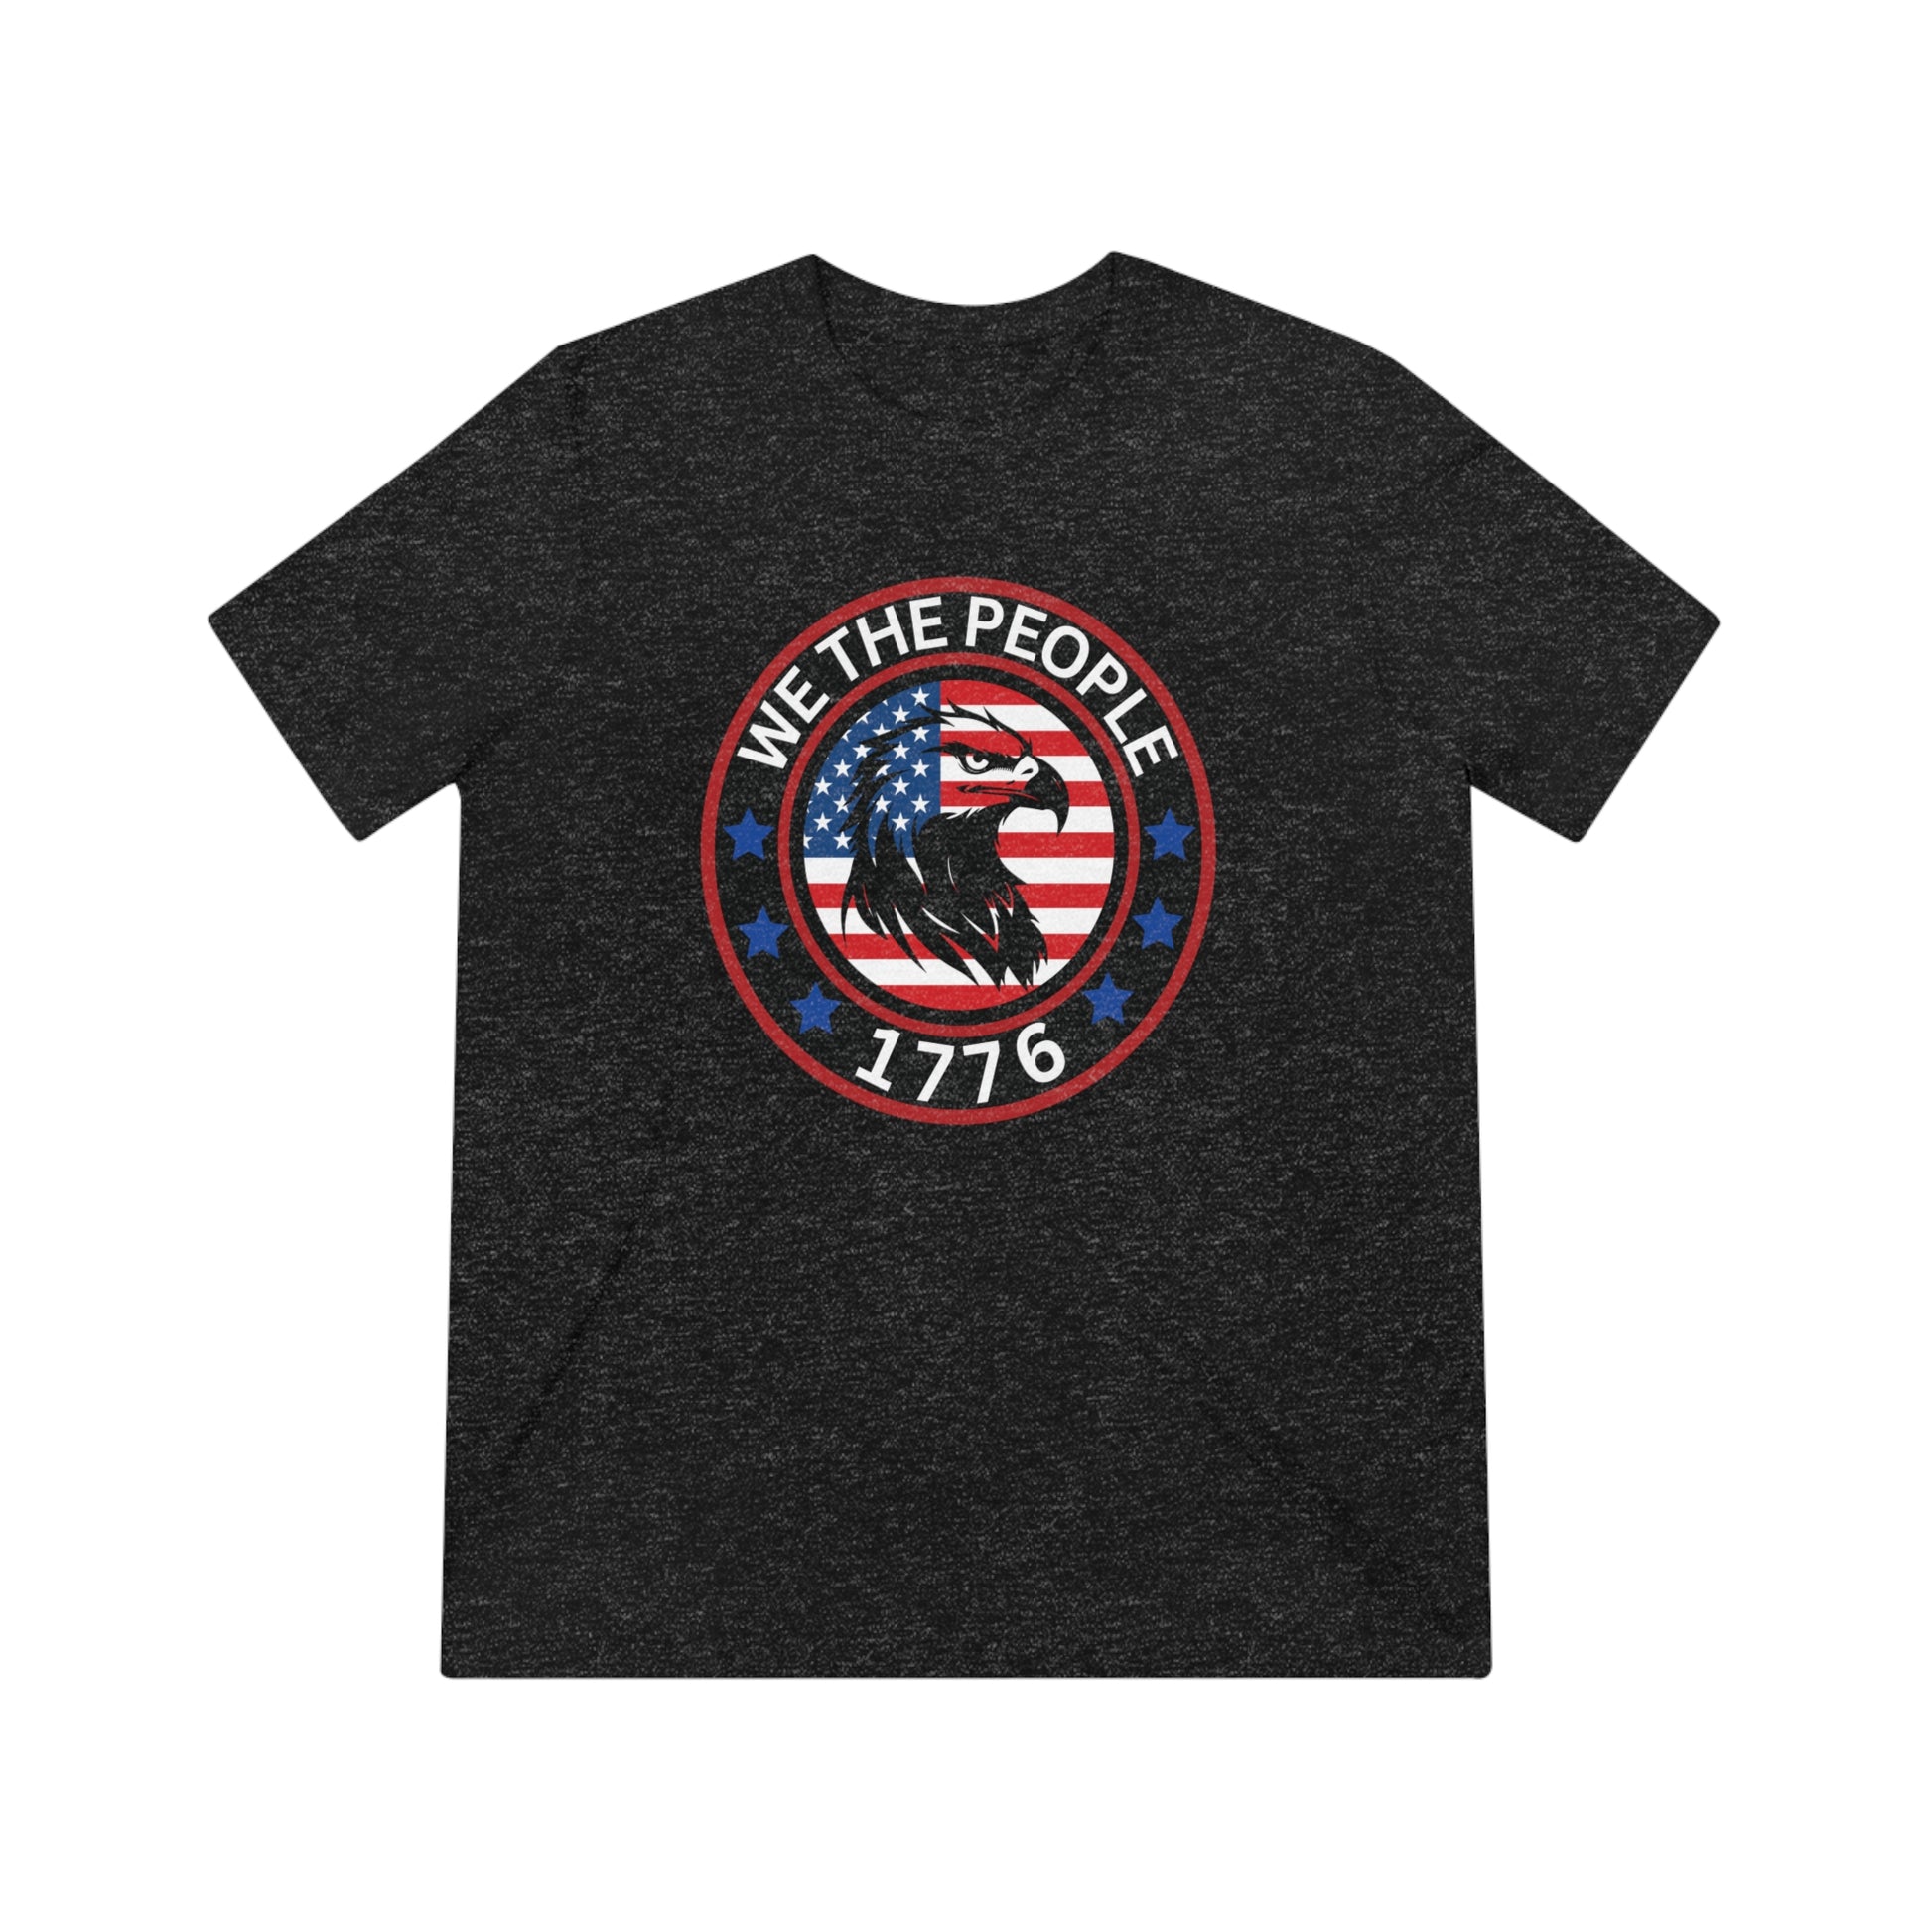 USA flag t-shirt